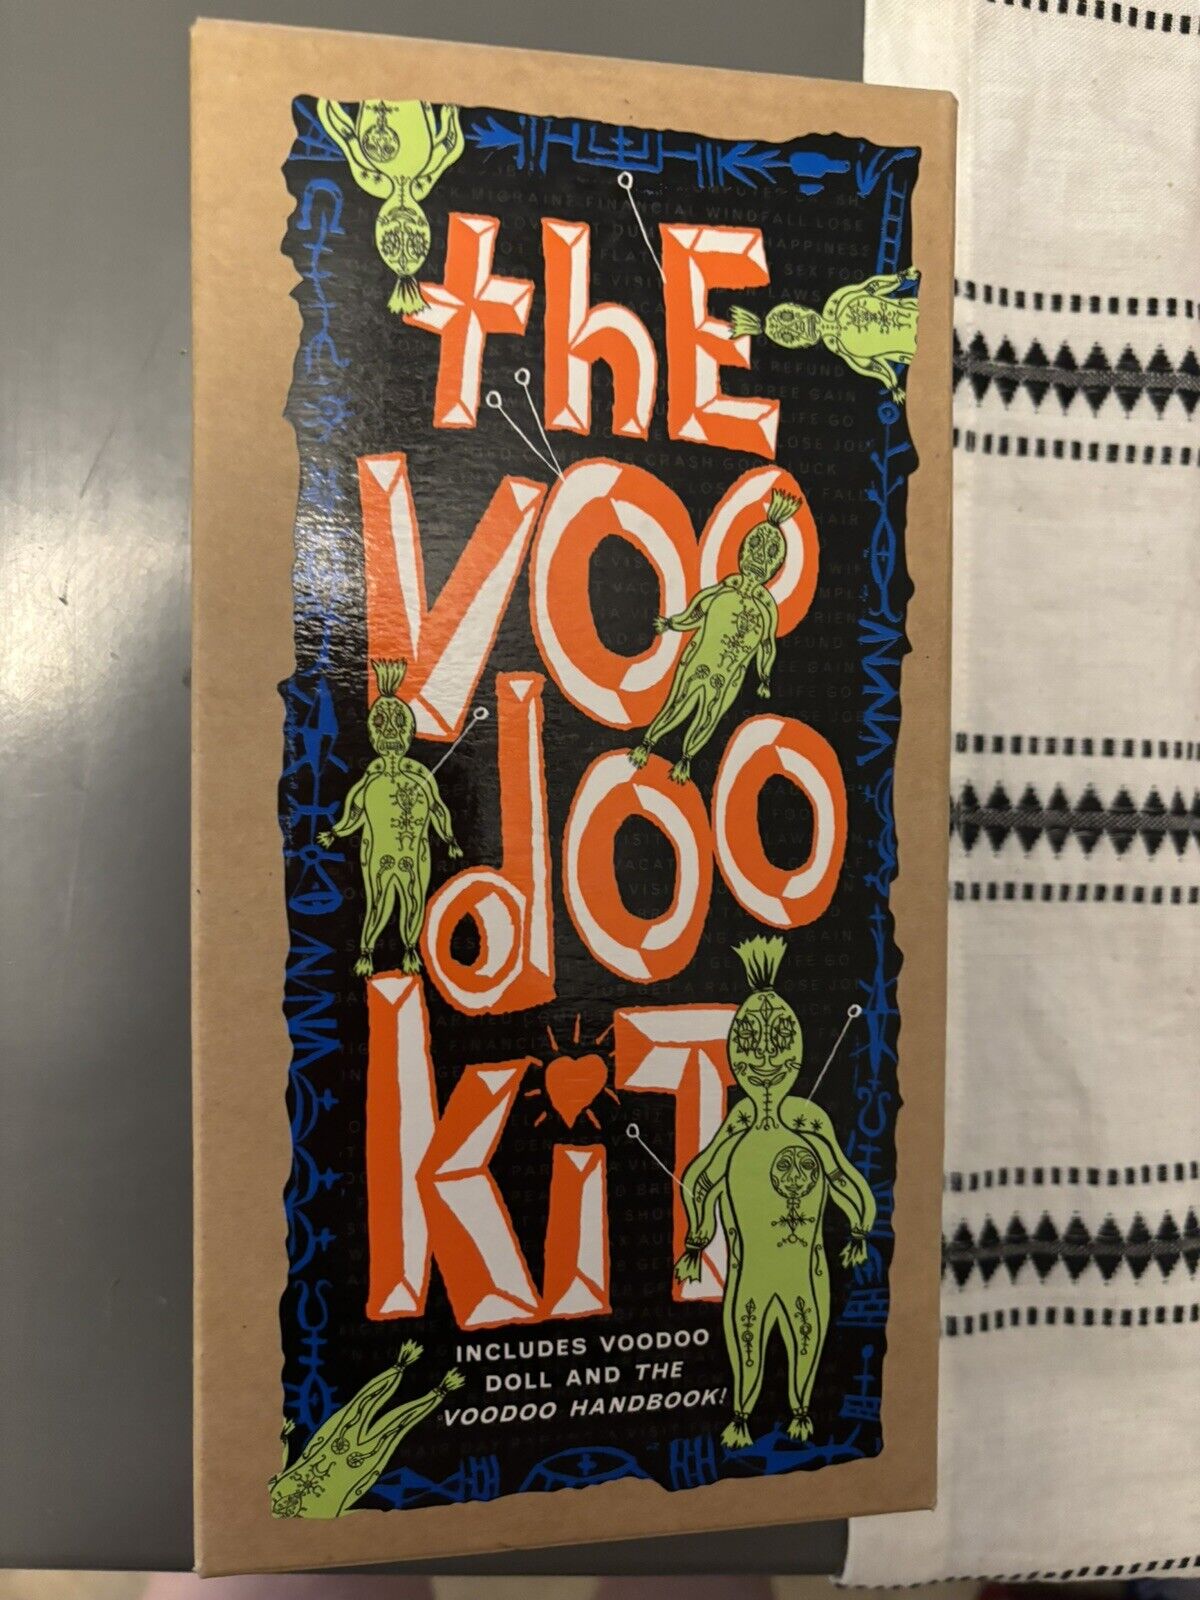 NEW 1997 The Voodoo Kit Includes Voodoo Doll & The Voodoo Handbook By Voodoo Lou